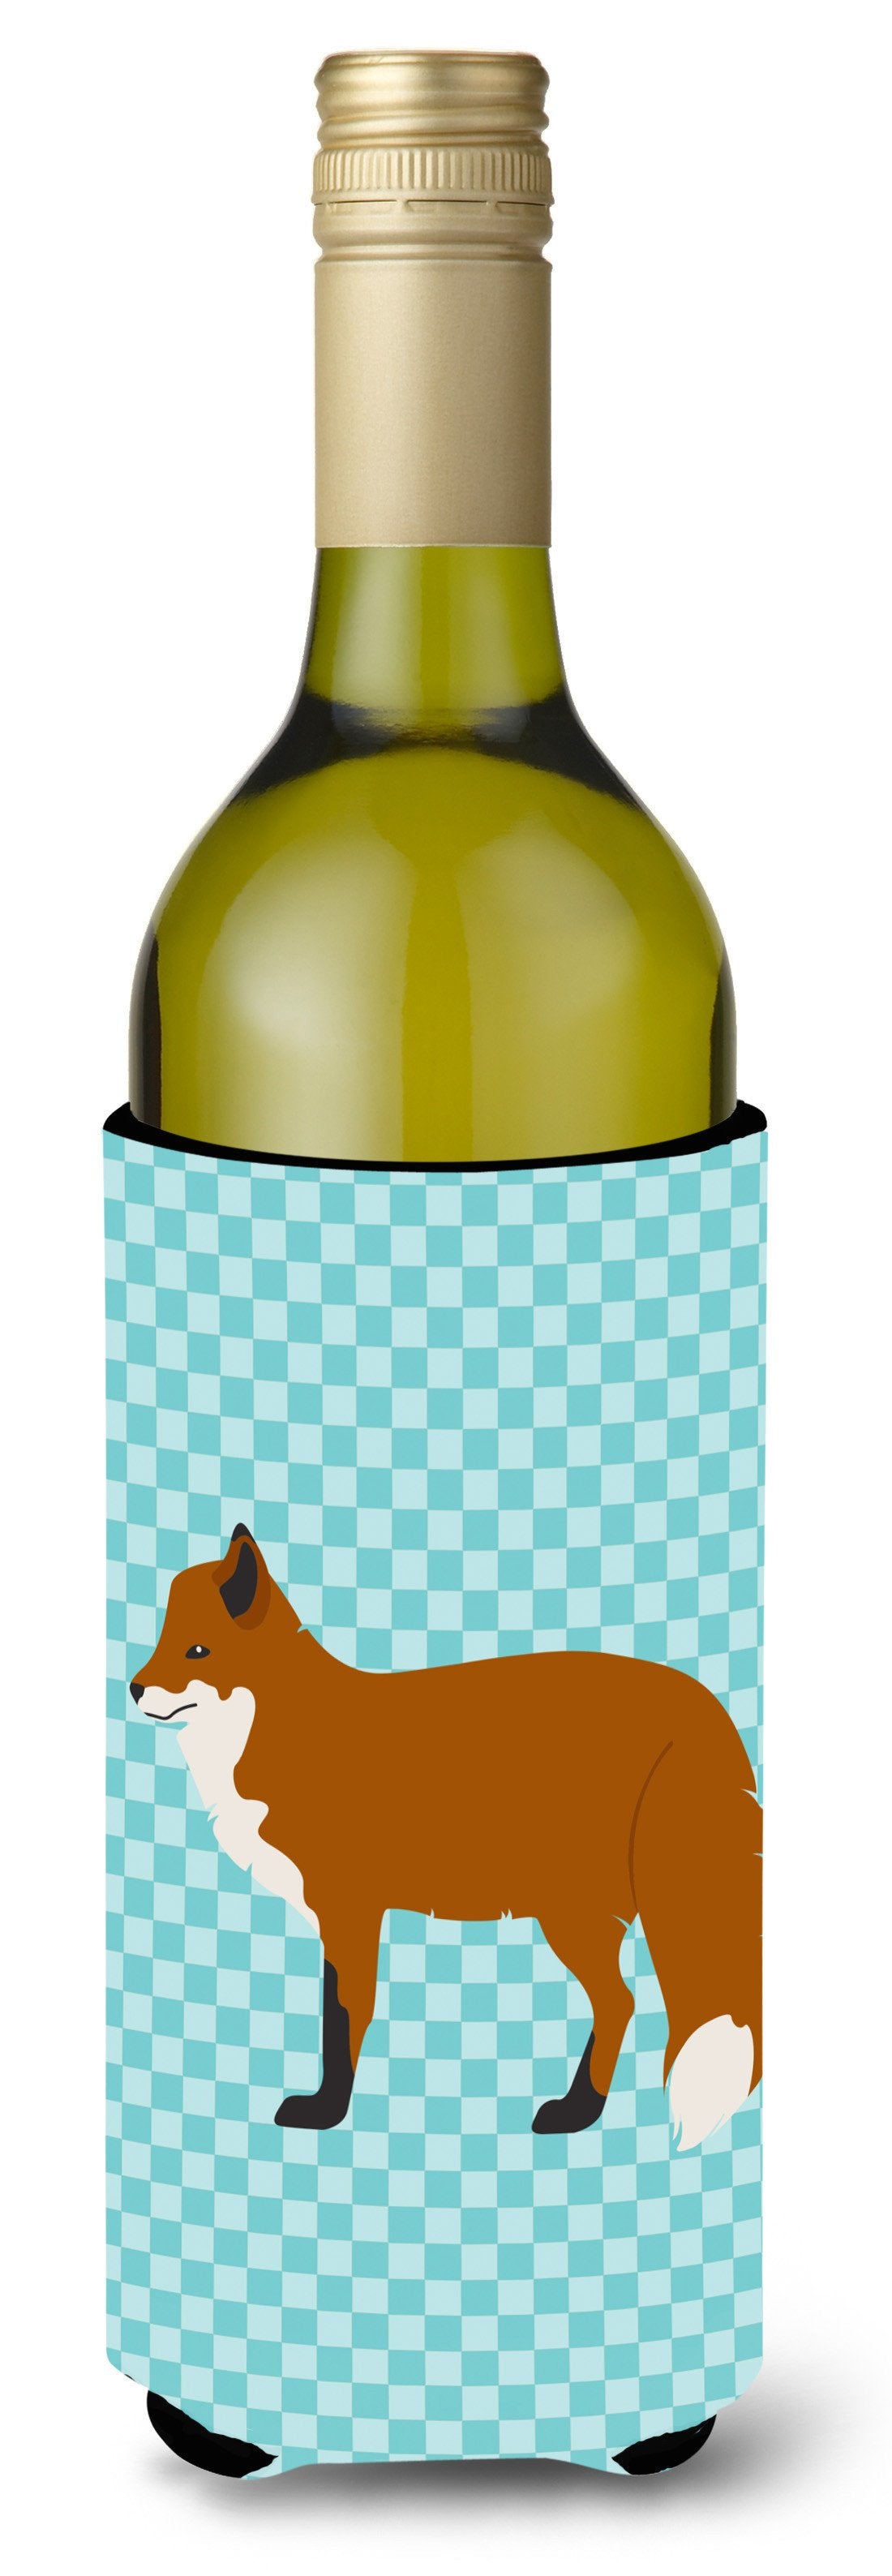 Red Fox Blue Check Wine Bottle Beverge Insulator Hugger BB8050LITERK by Caroline's Treasures